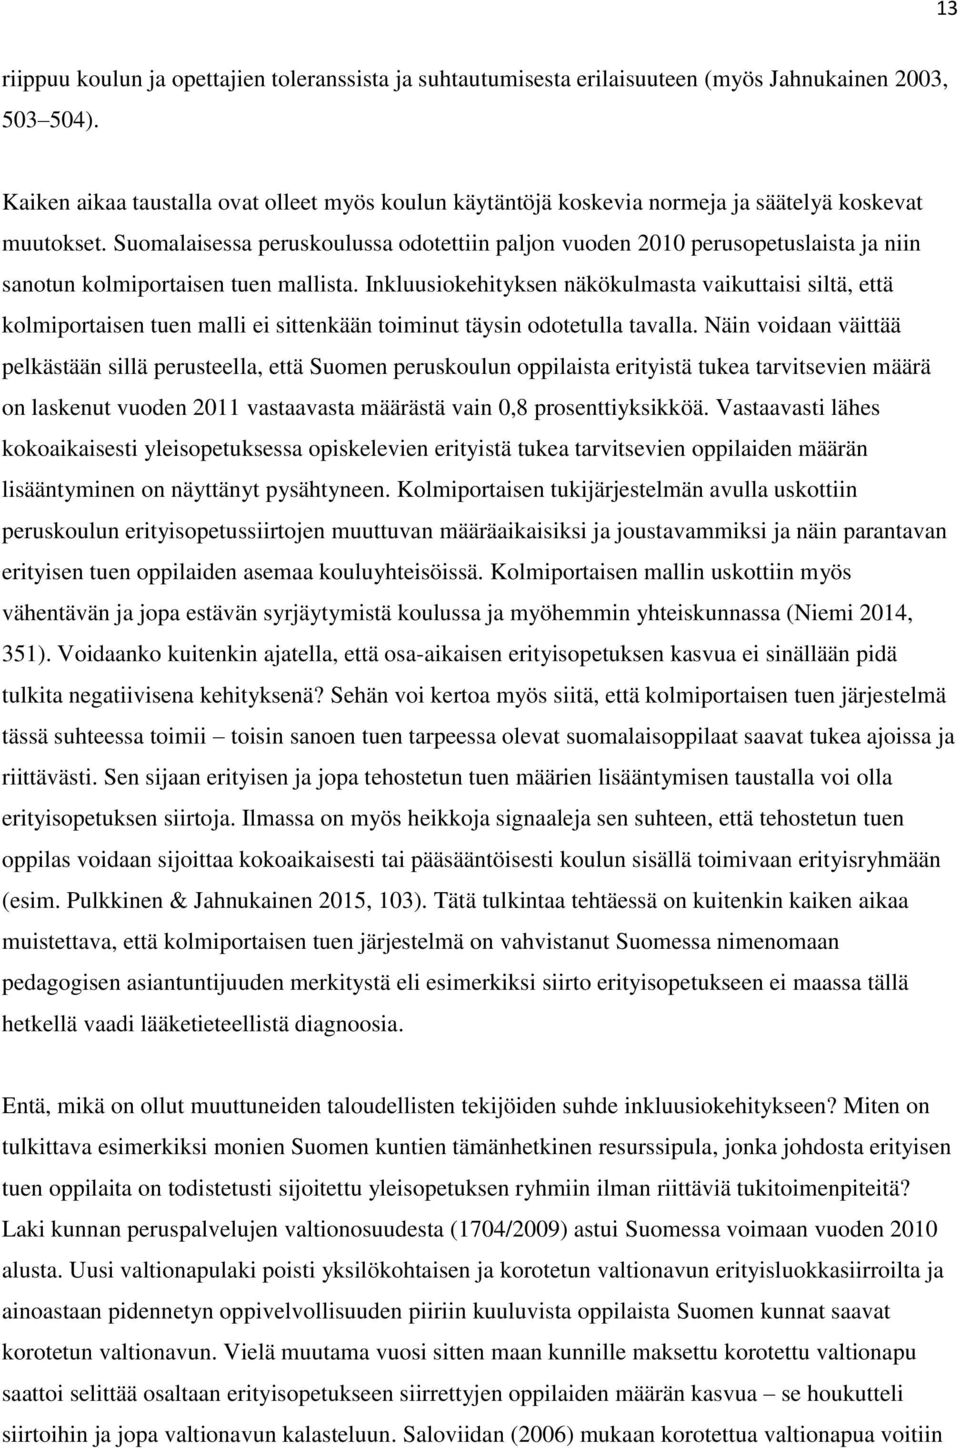 Suomalaisessa peruskoulussa odotettiin paljon vuoden 2010 perusopetuslaista ja niin sanotun kolmiportaisen tuen mallista.